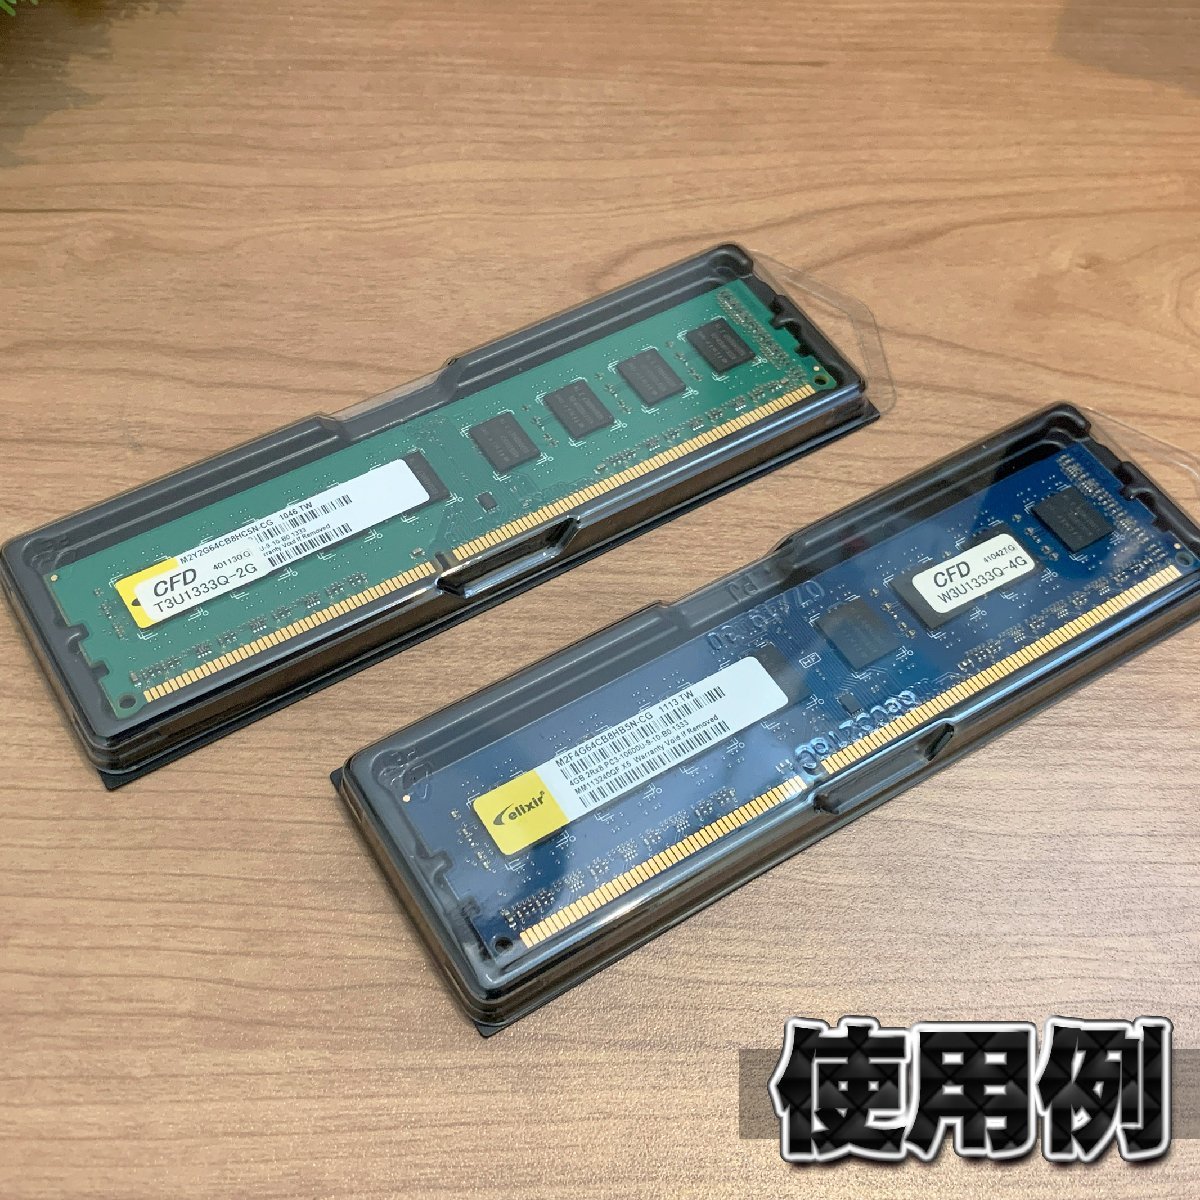 【 DDR 対応 】蓋付き PC メモリー シェルケース DIMM 用 プラスチック 保管 収納ケース 50枚セット_画像6